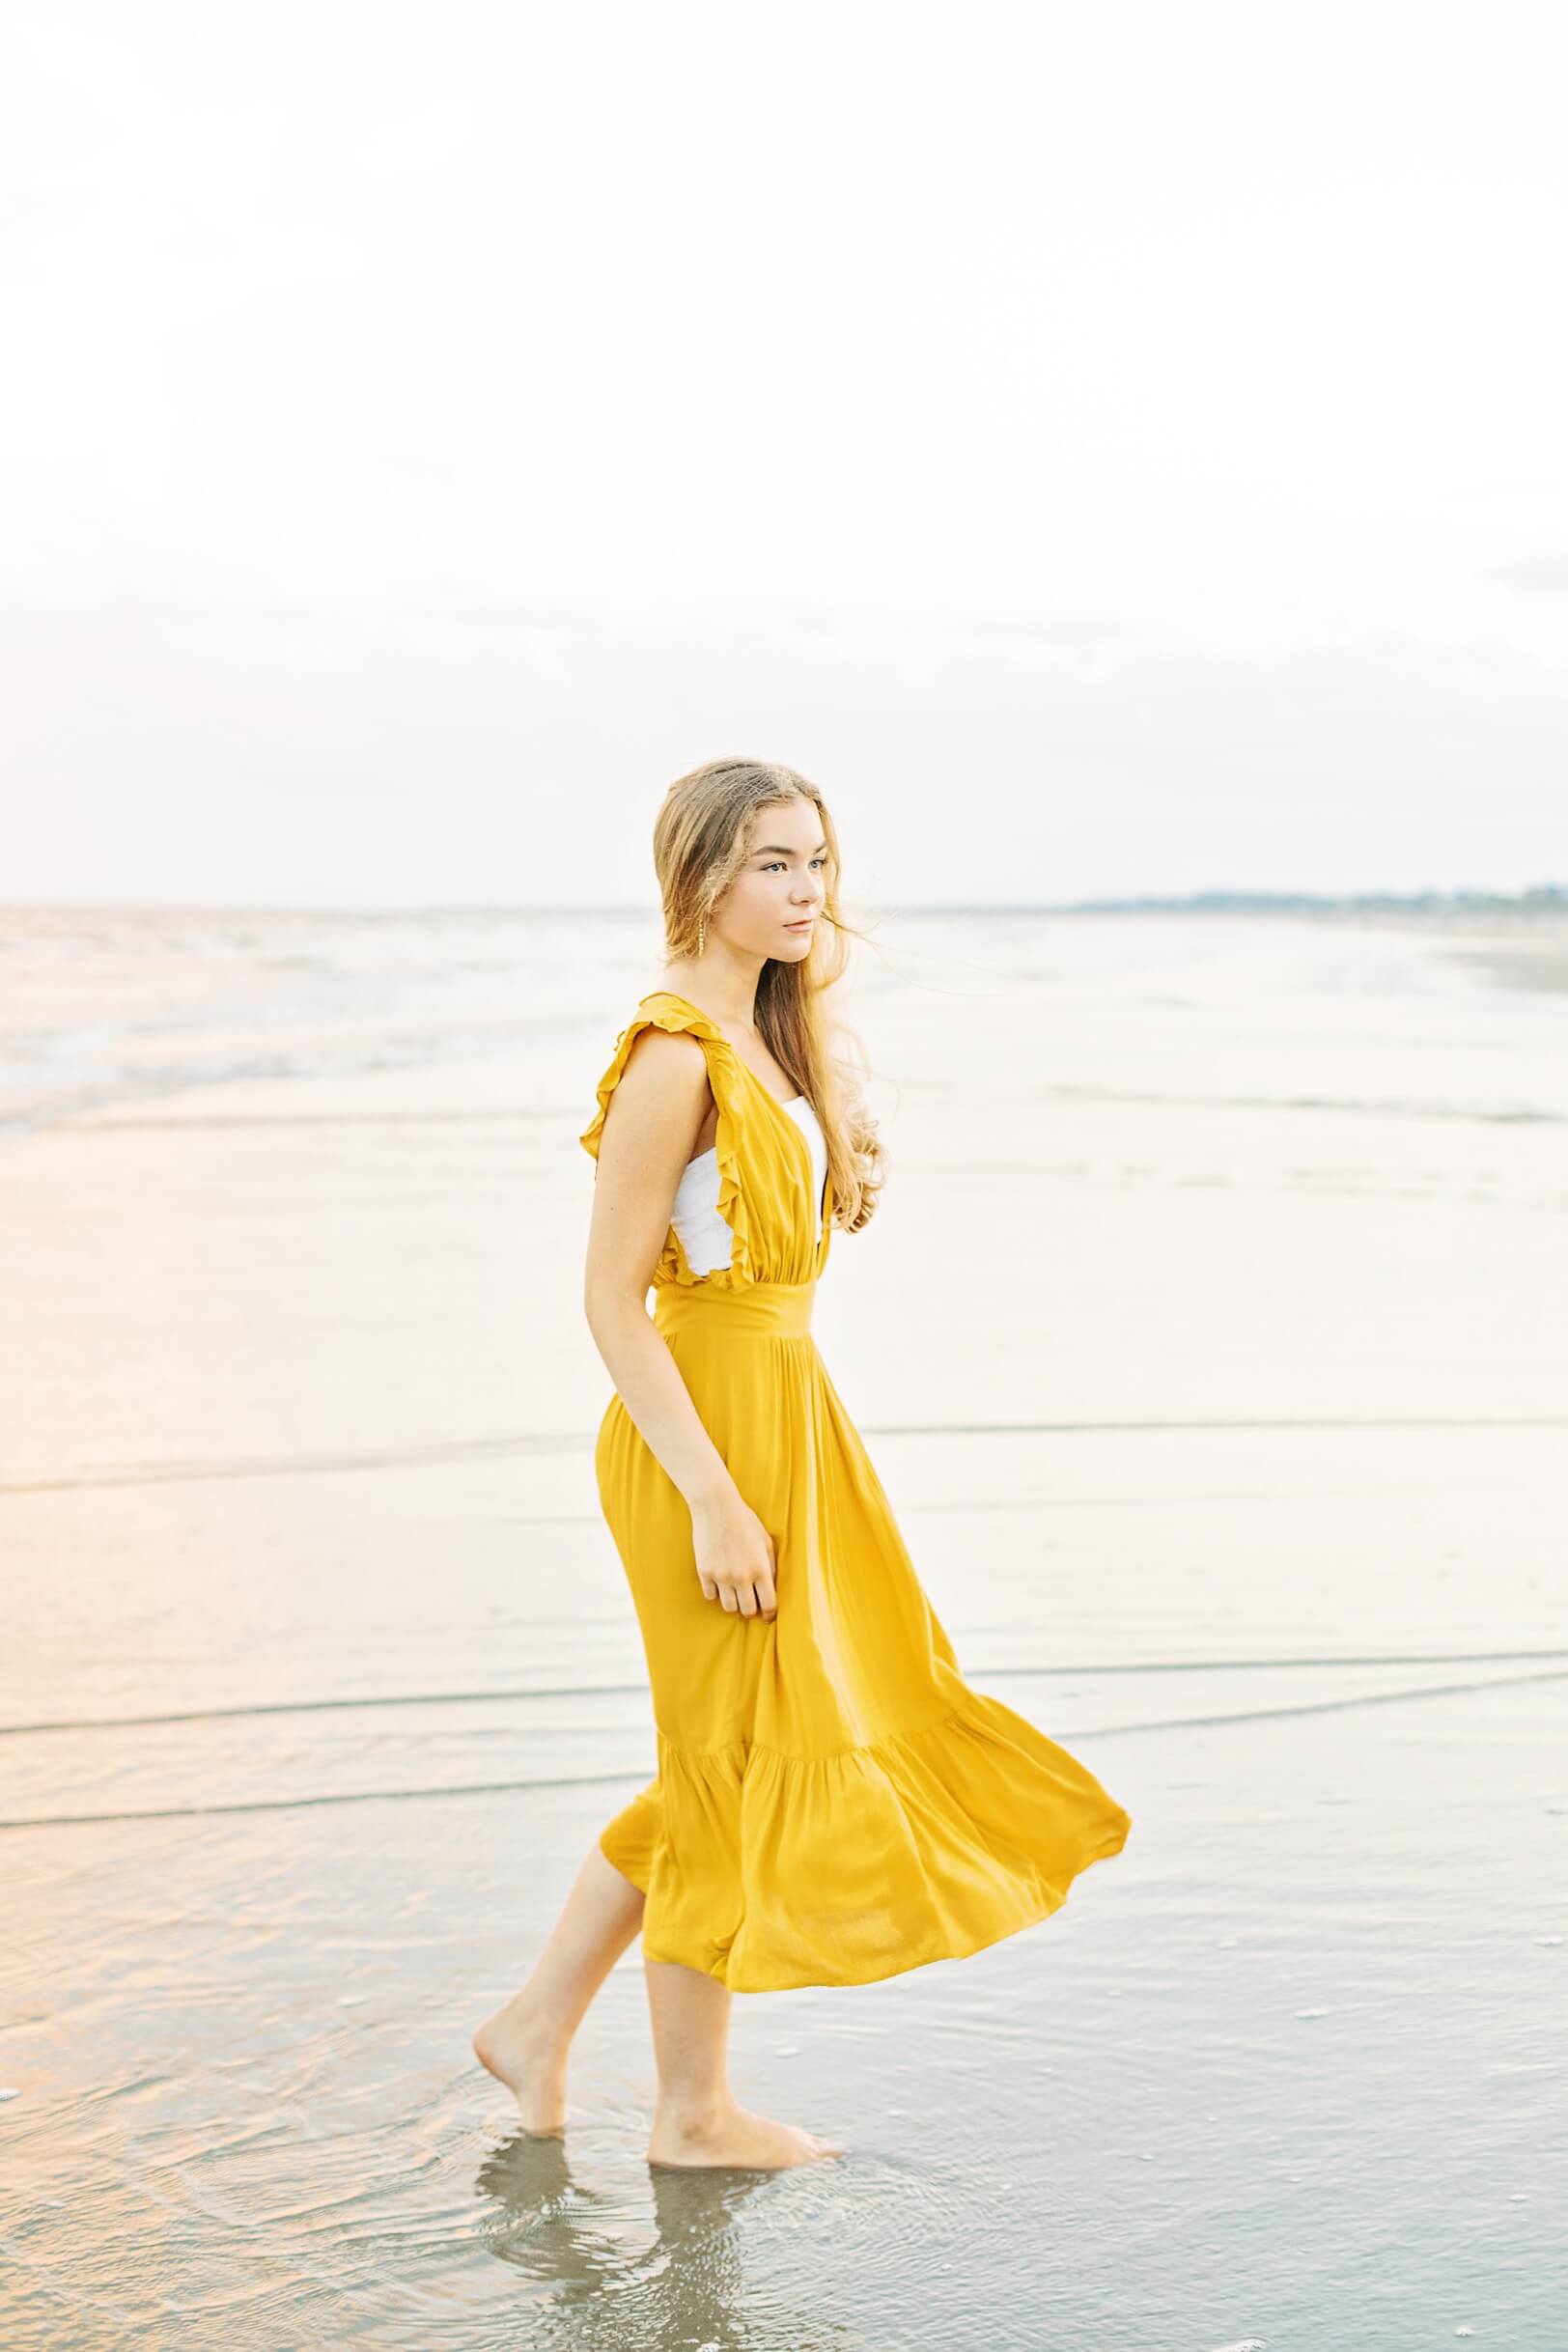 Yellow Dress at Beach | Kaitlin Scott Photography